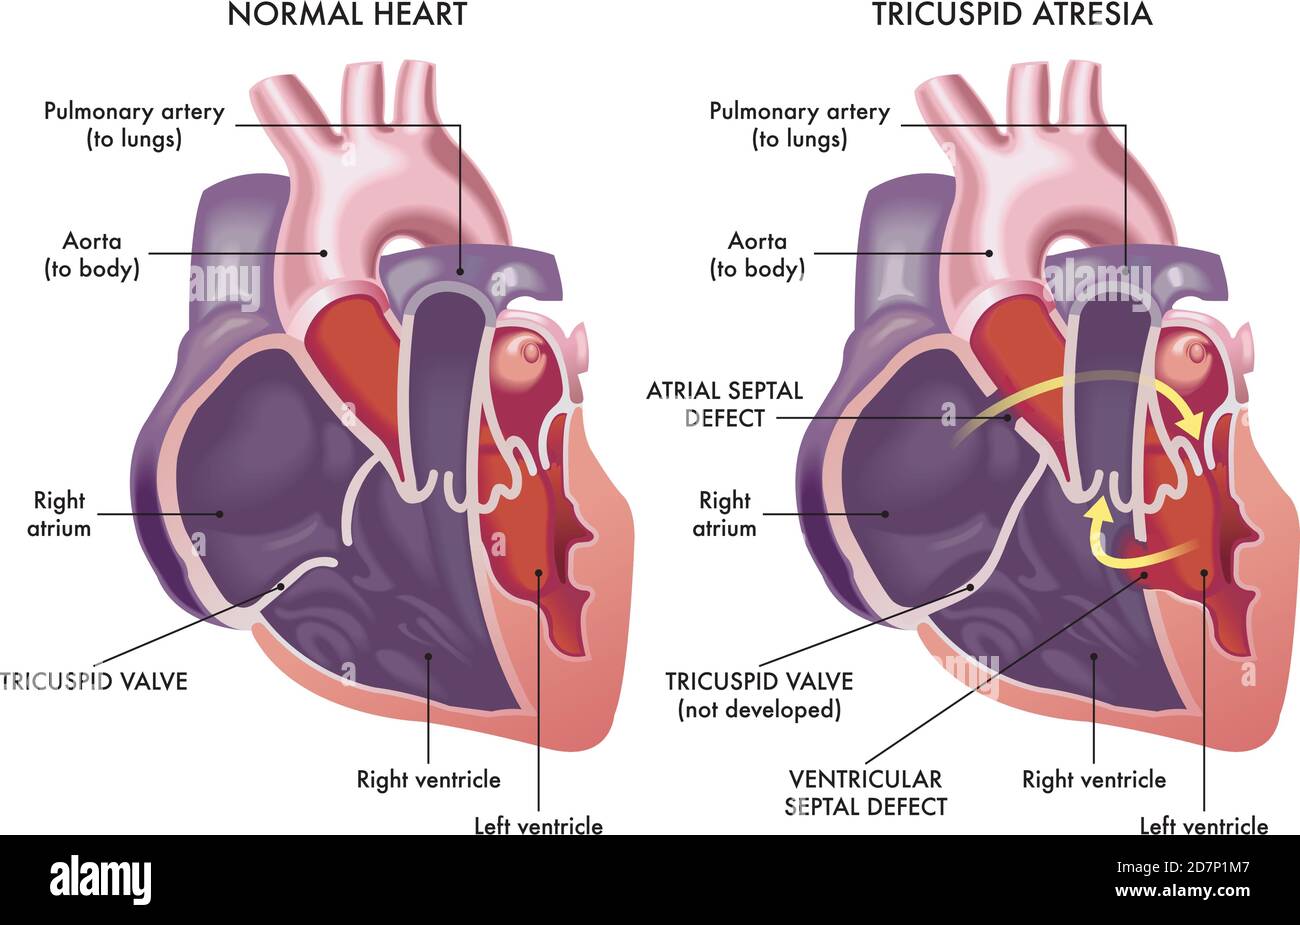 Medizinische Illustration, die ein normales Herz mit einem Herz vergleicht, das von einem Herzfehler namens Tricuspidatresie betroffen ist, mit Anmerkungen. Stock Vektor